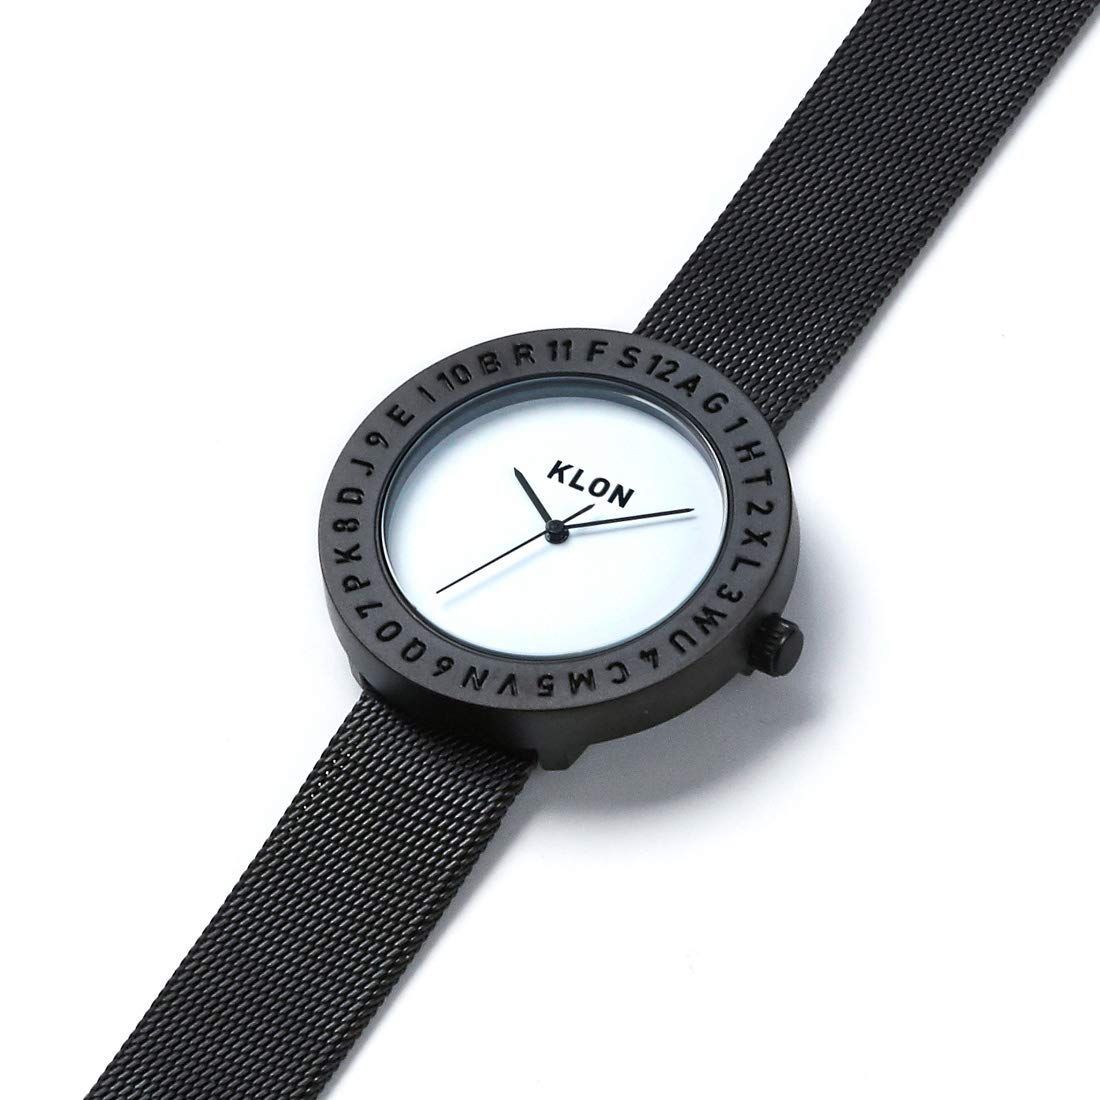 【特価セール】レディース おしゃれ メンズ シンプル KLON 時計 ENGRAVE クローン TIME -BLACK 腕時計 MESH- klon 33mm